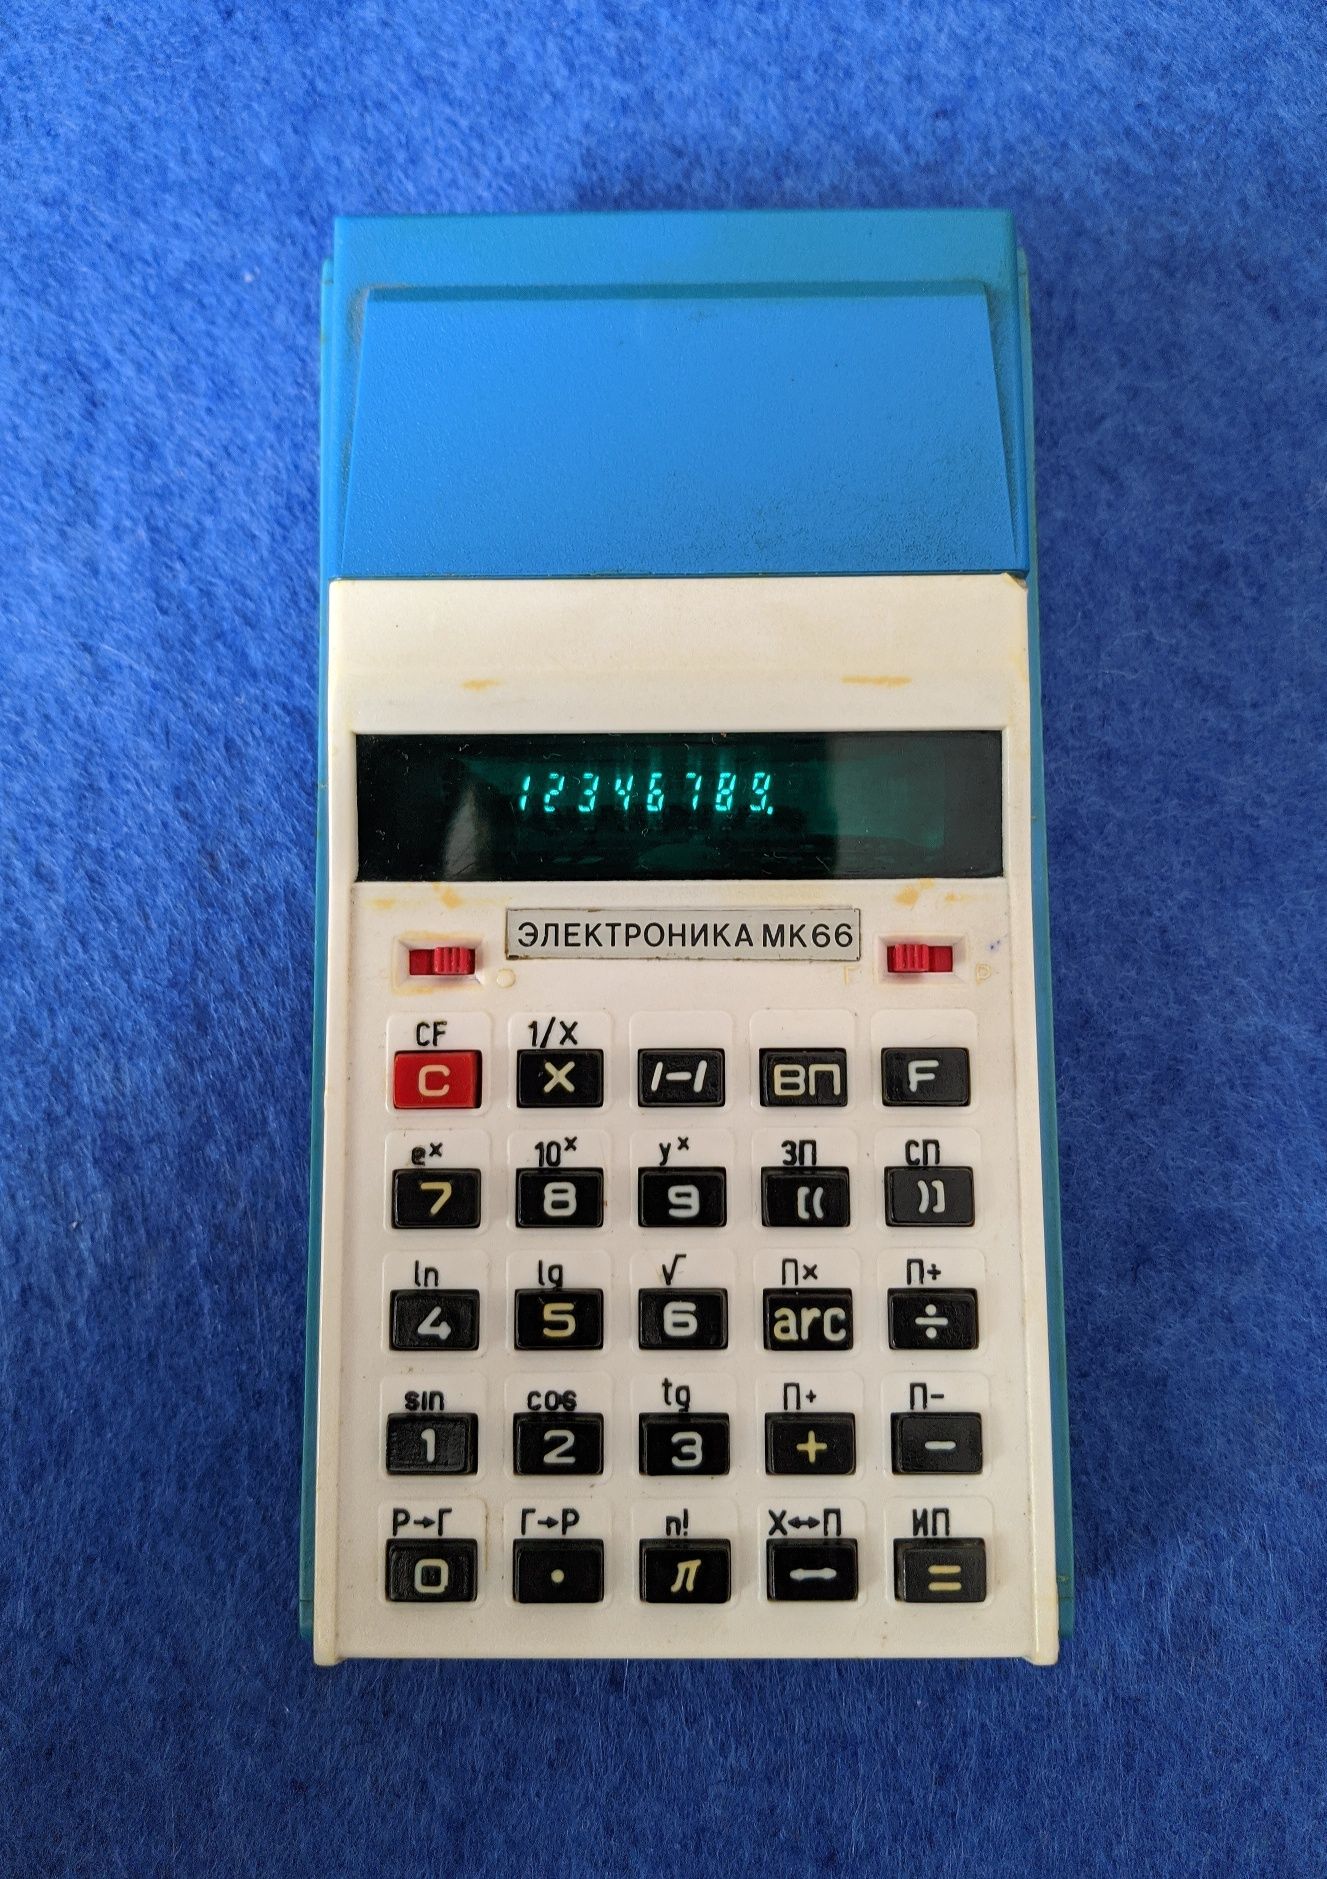 Рідкісний радянський калькулятор "Електроника МК66"